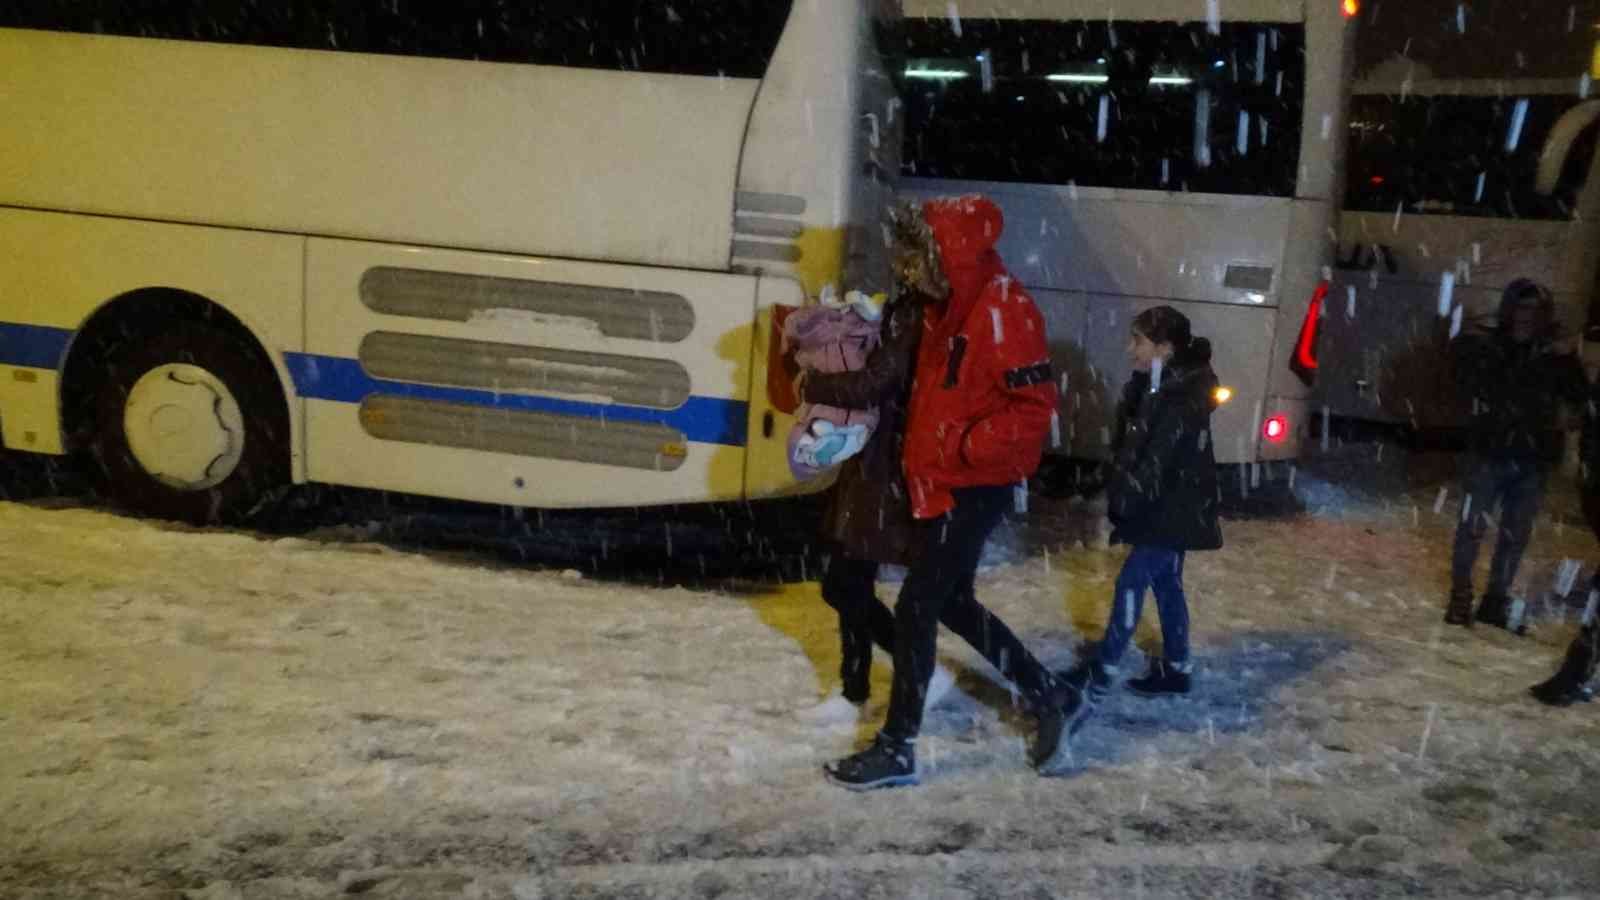 Karda mahsur kalan yolcular, valizlerini alıp geri dönmeye çalıştı #duzce